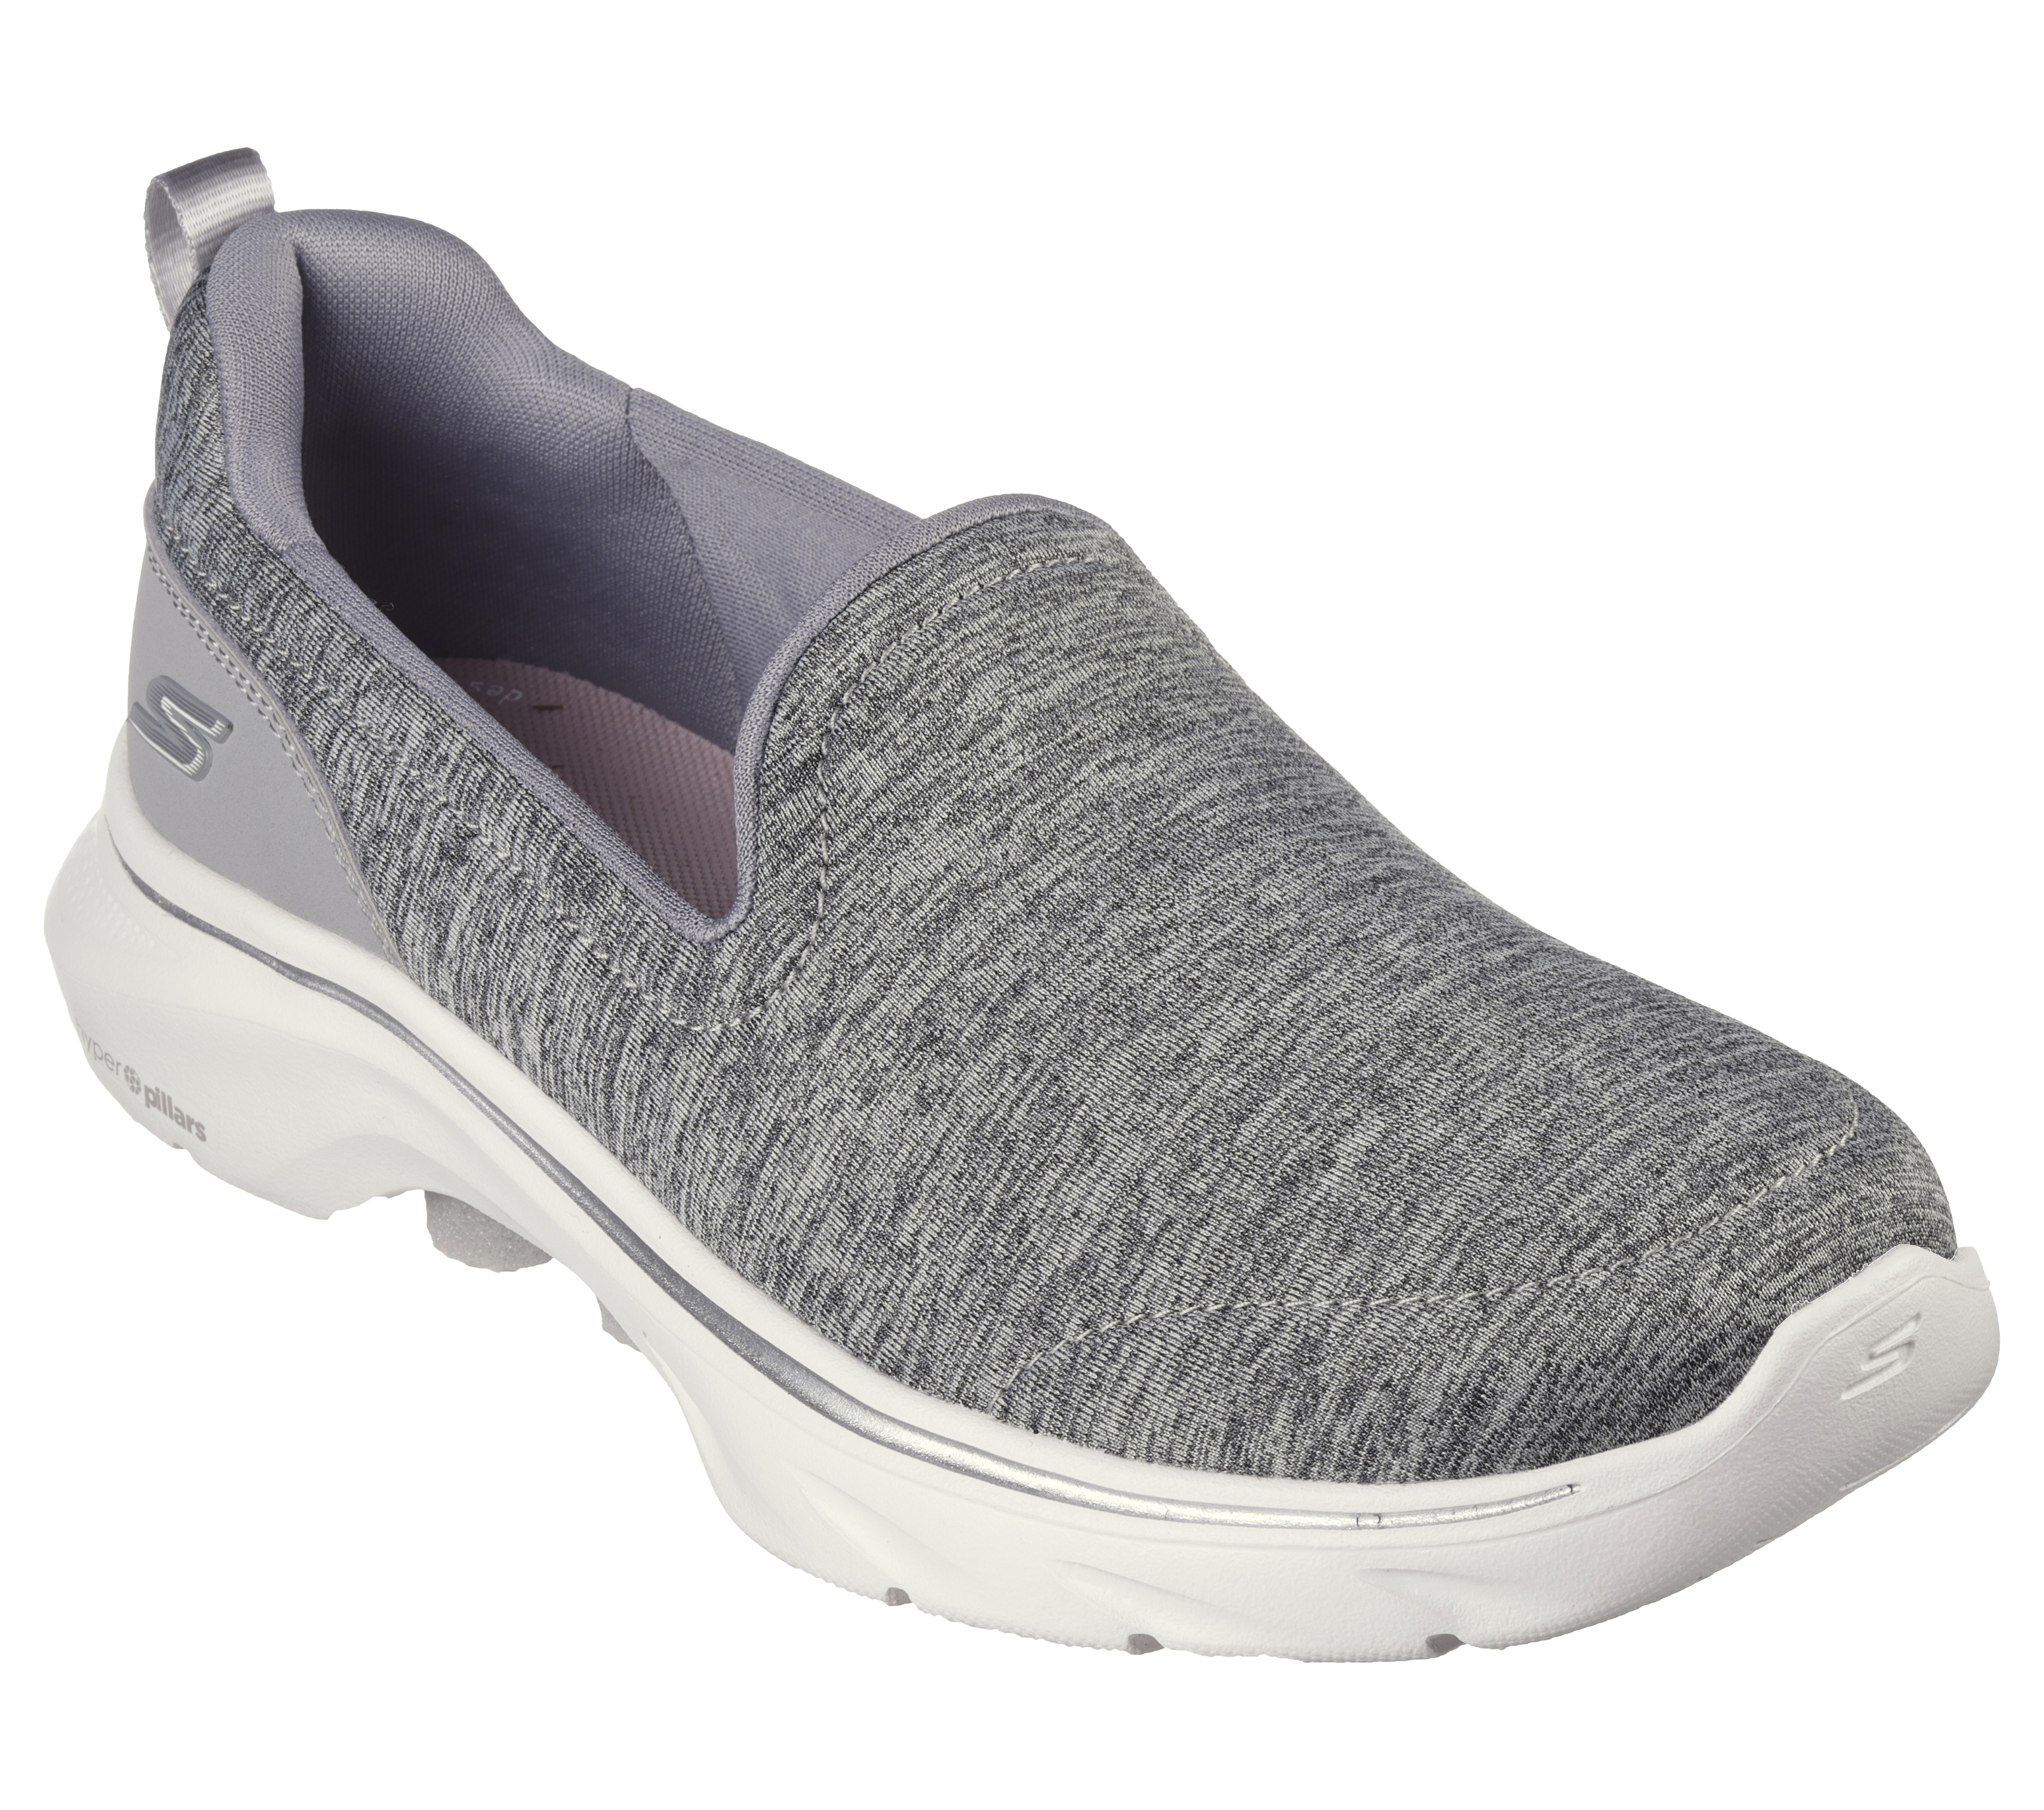 SKECHERS GOFLEX WALK Gray Athletic Shoes Casual Sneakers SN 14017 Women's  Sz 7.5